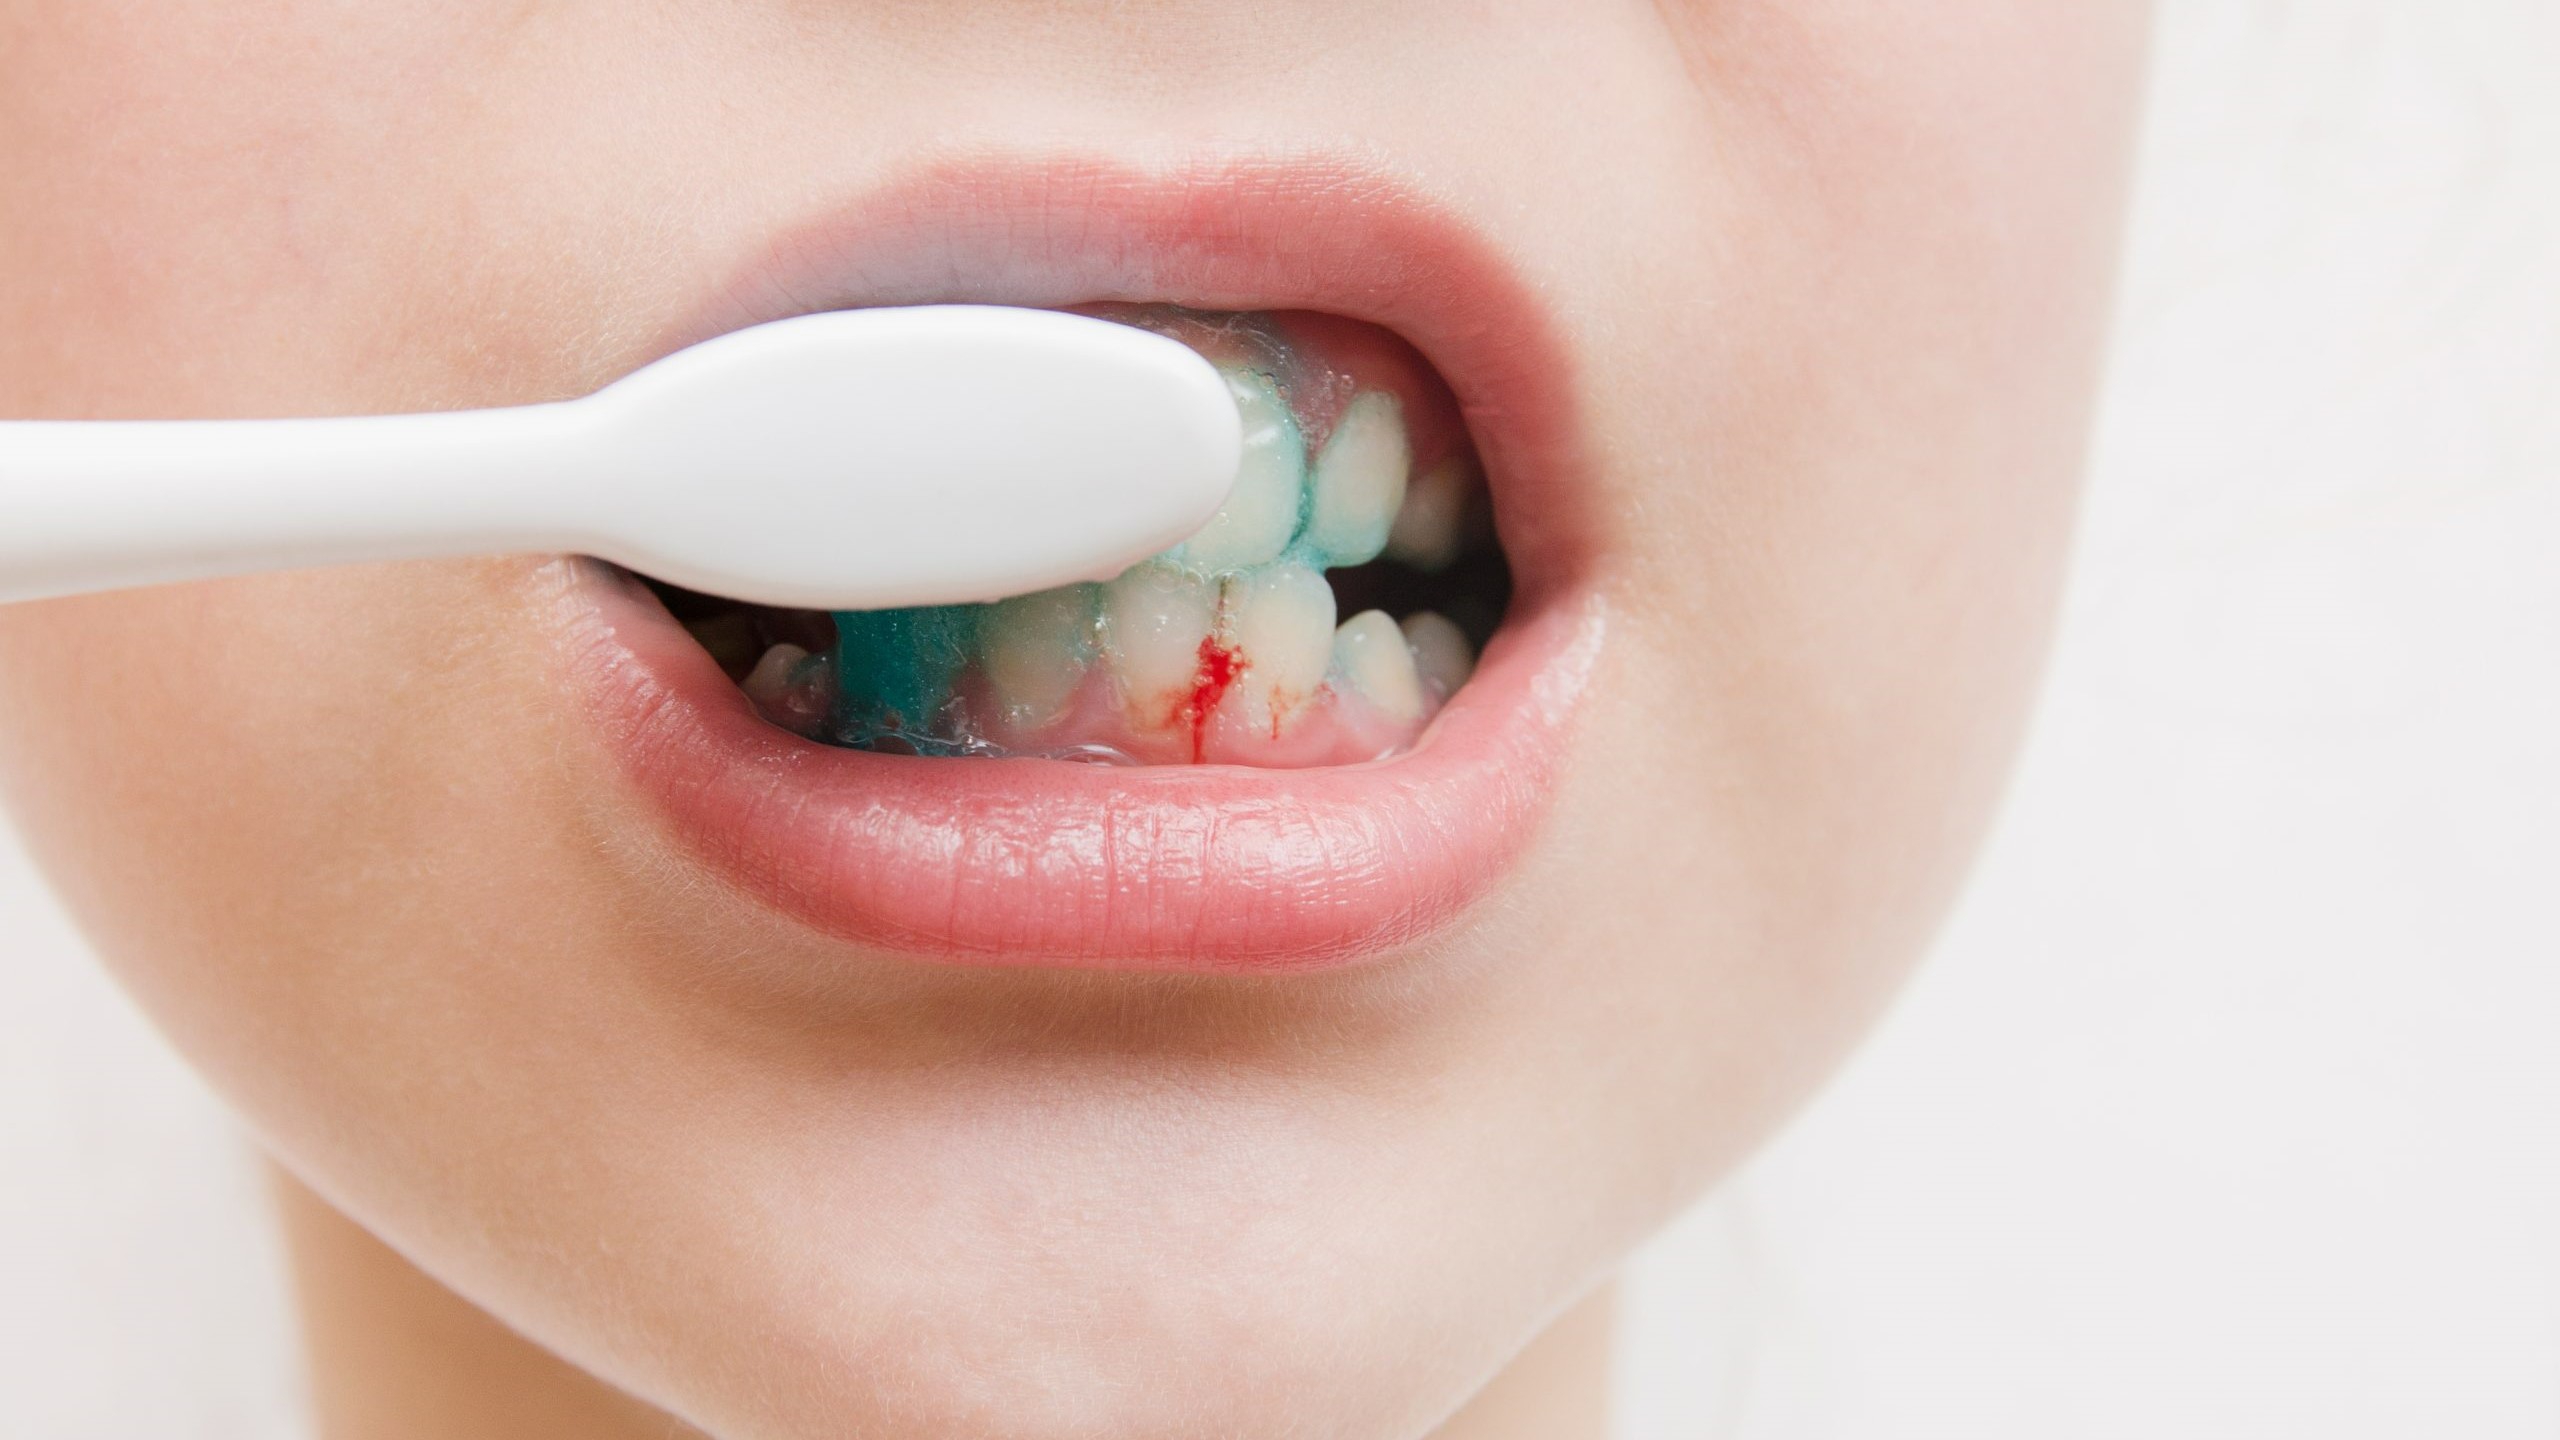  Chảy máu chân răng uống thuốc gì : Nguyên nhân và cách điều trị hiệu quả